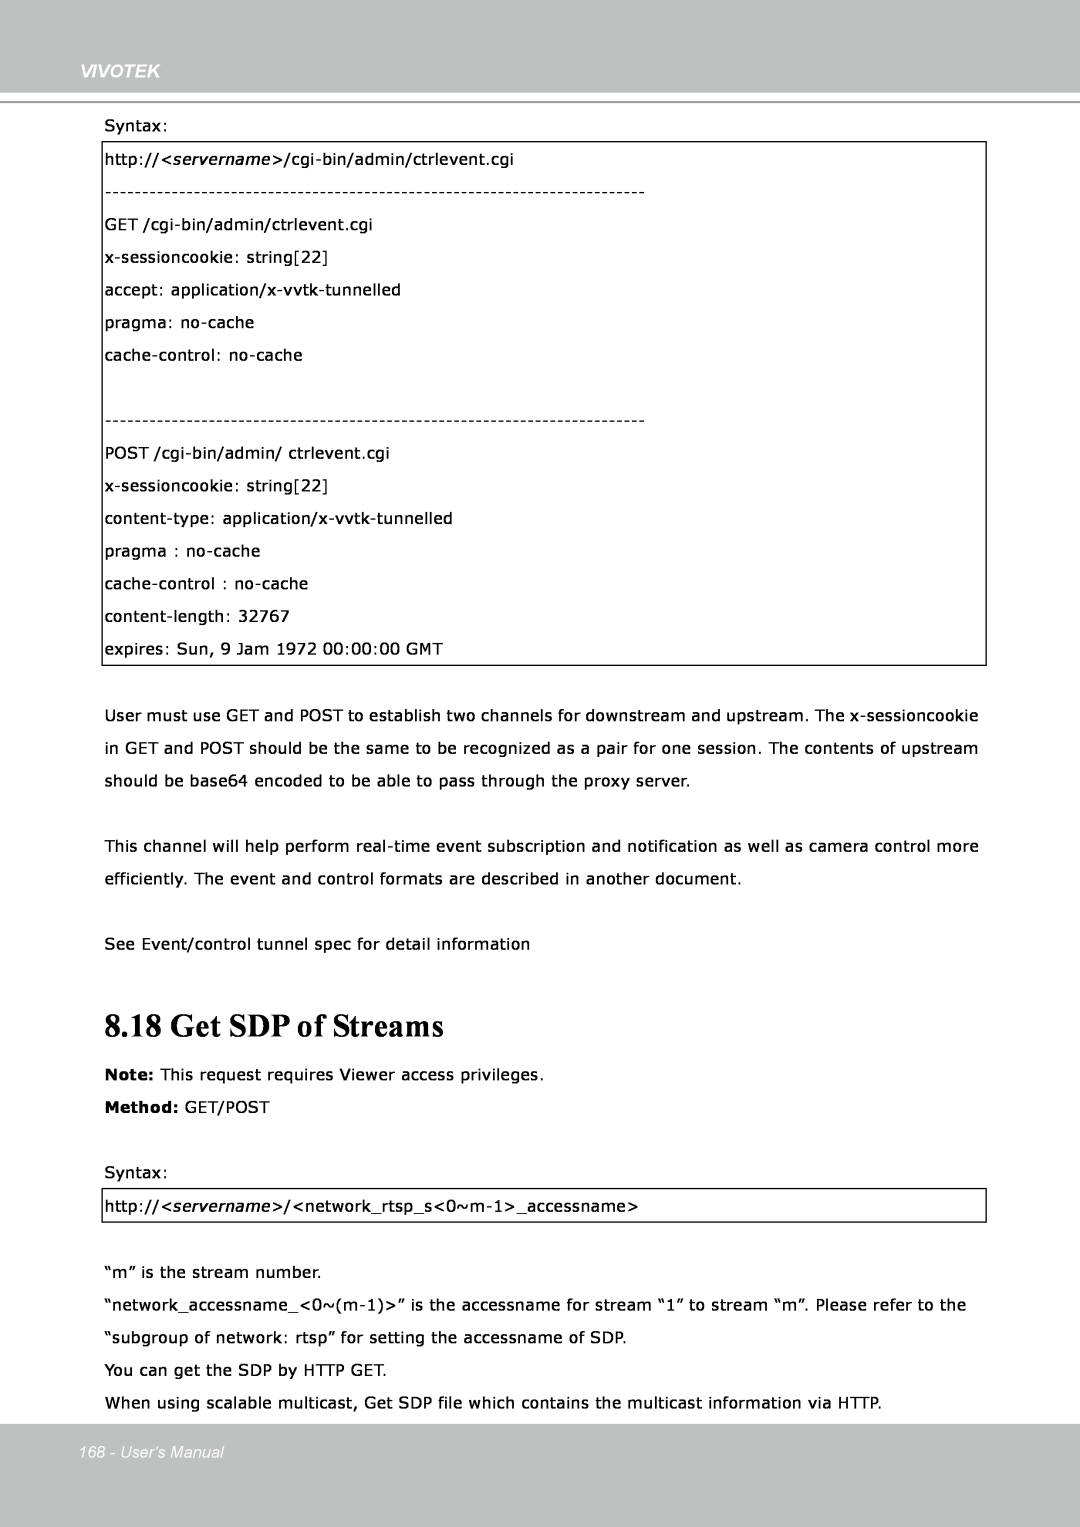 Vivotek IP8151 manual Get SDP of Streams, Vivotek, Method: GET/POST, Users Manual 